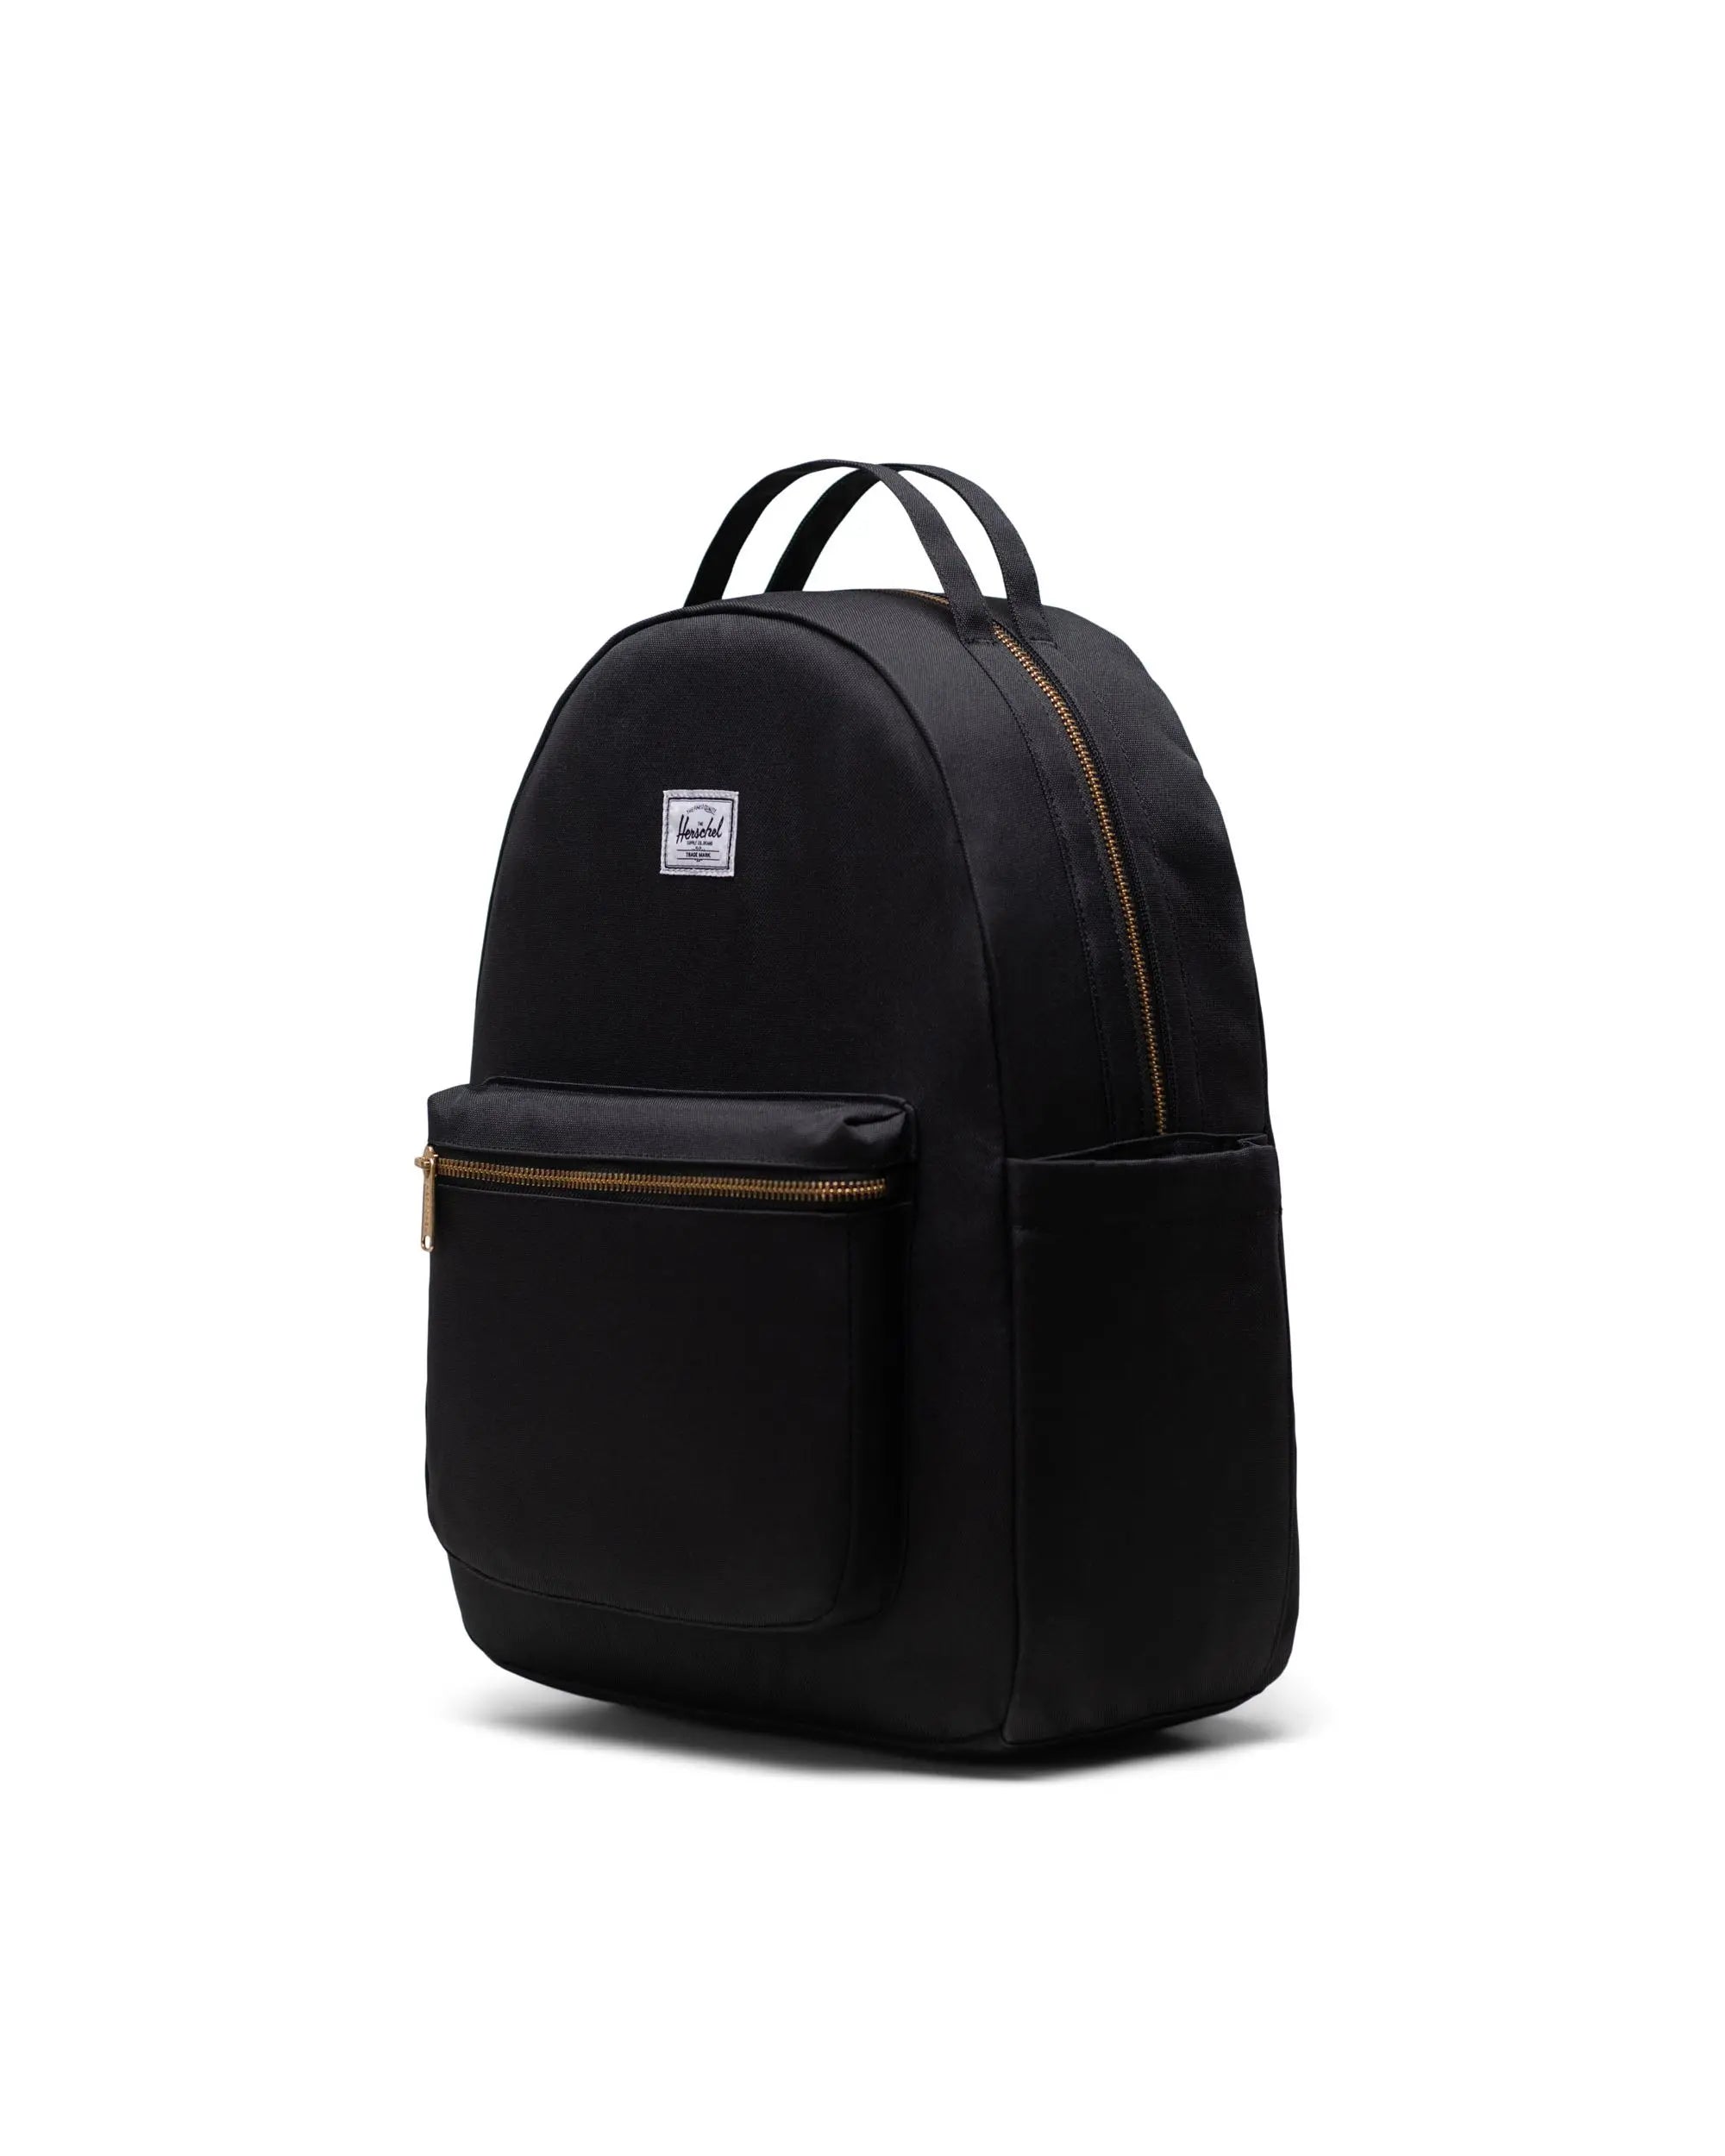 Black Diaper Bag Nova Backpack Herschel Nova Backpack Diaper Bag Black